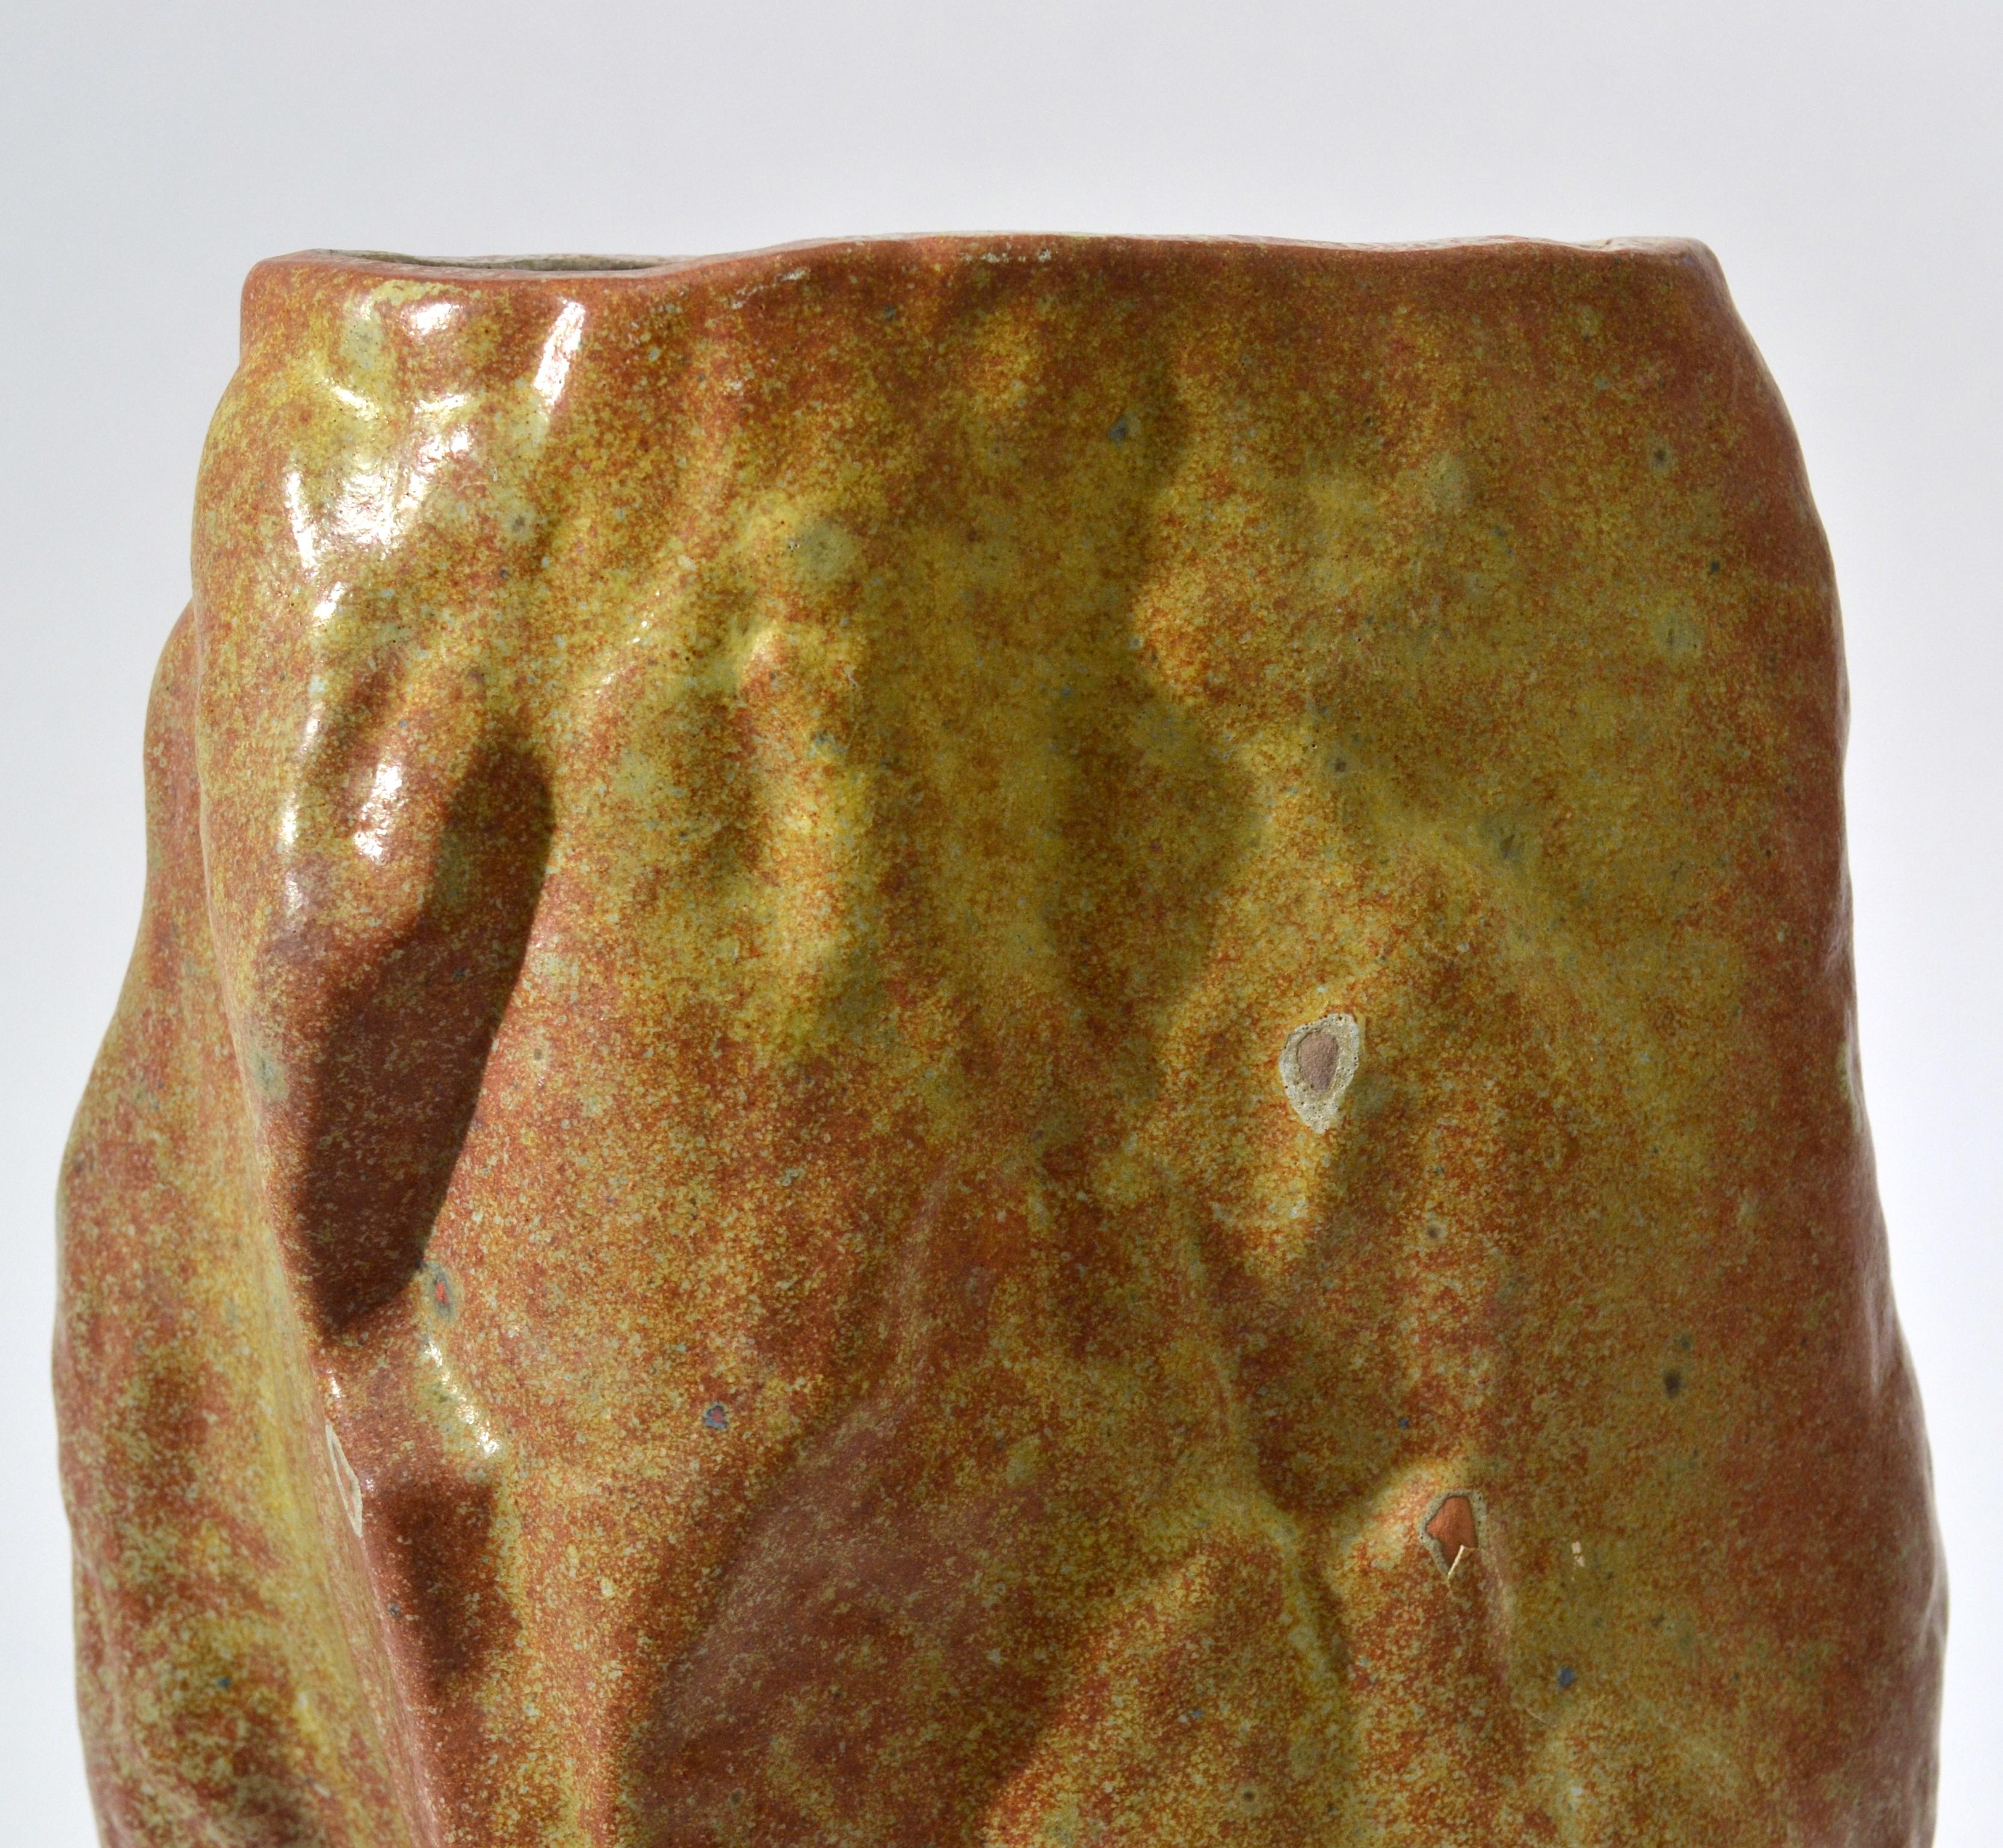 Series of Sculptural Studio Pottery 1960s Dutch Rock Shape Vases, De Olde Kruyk 6